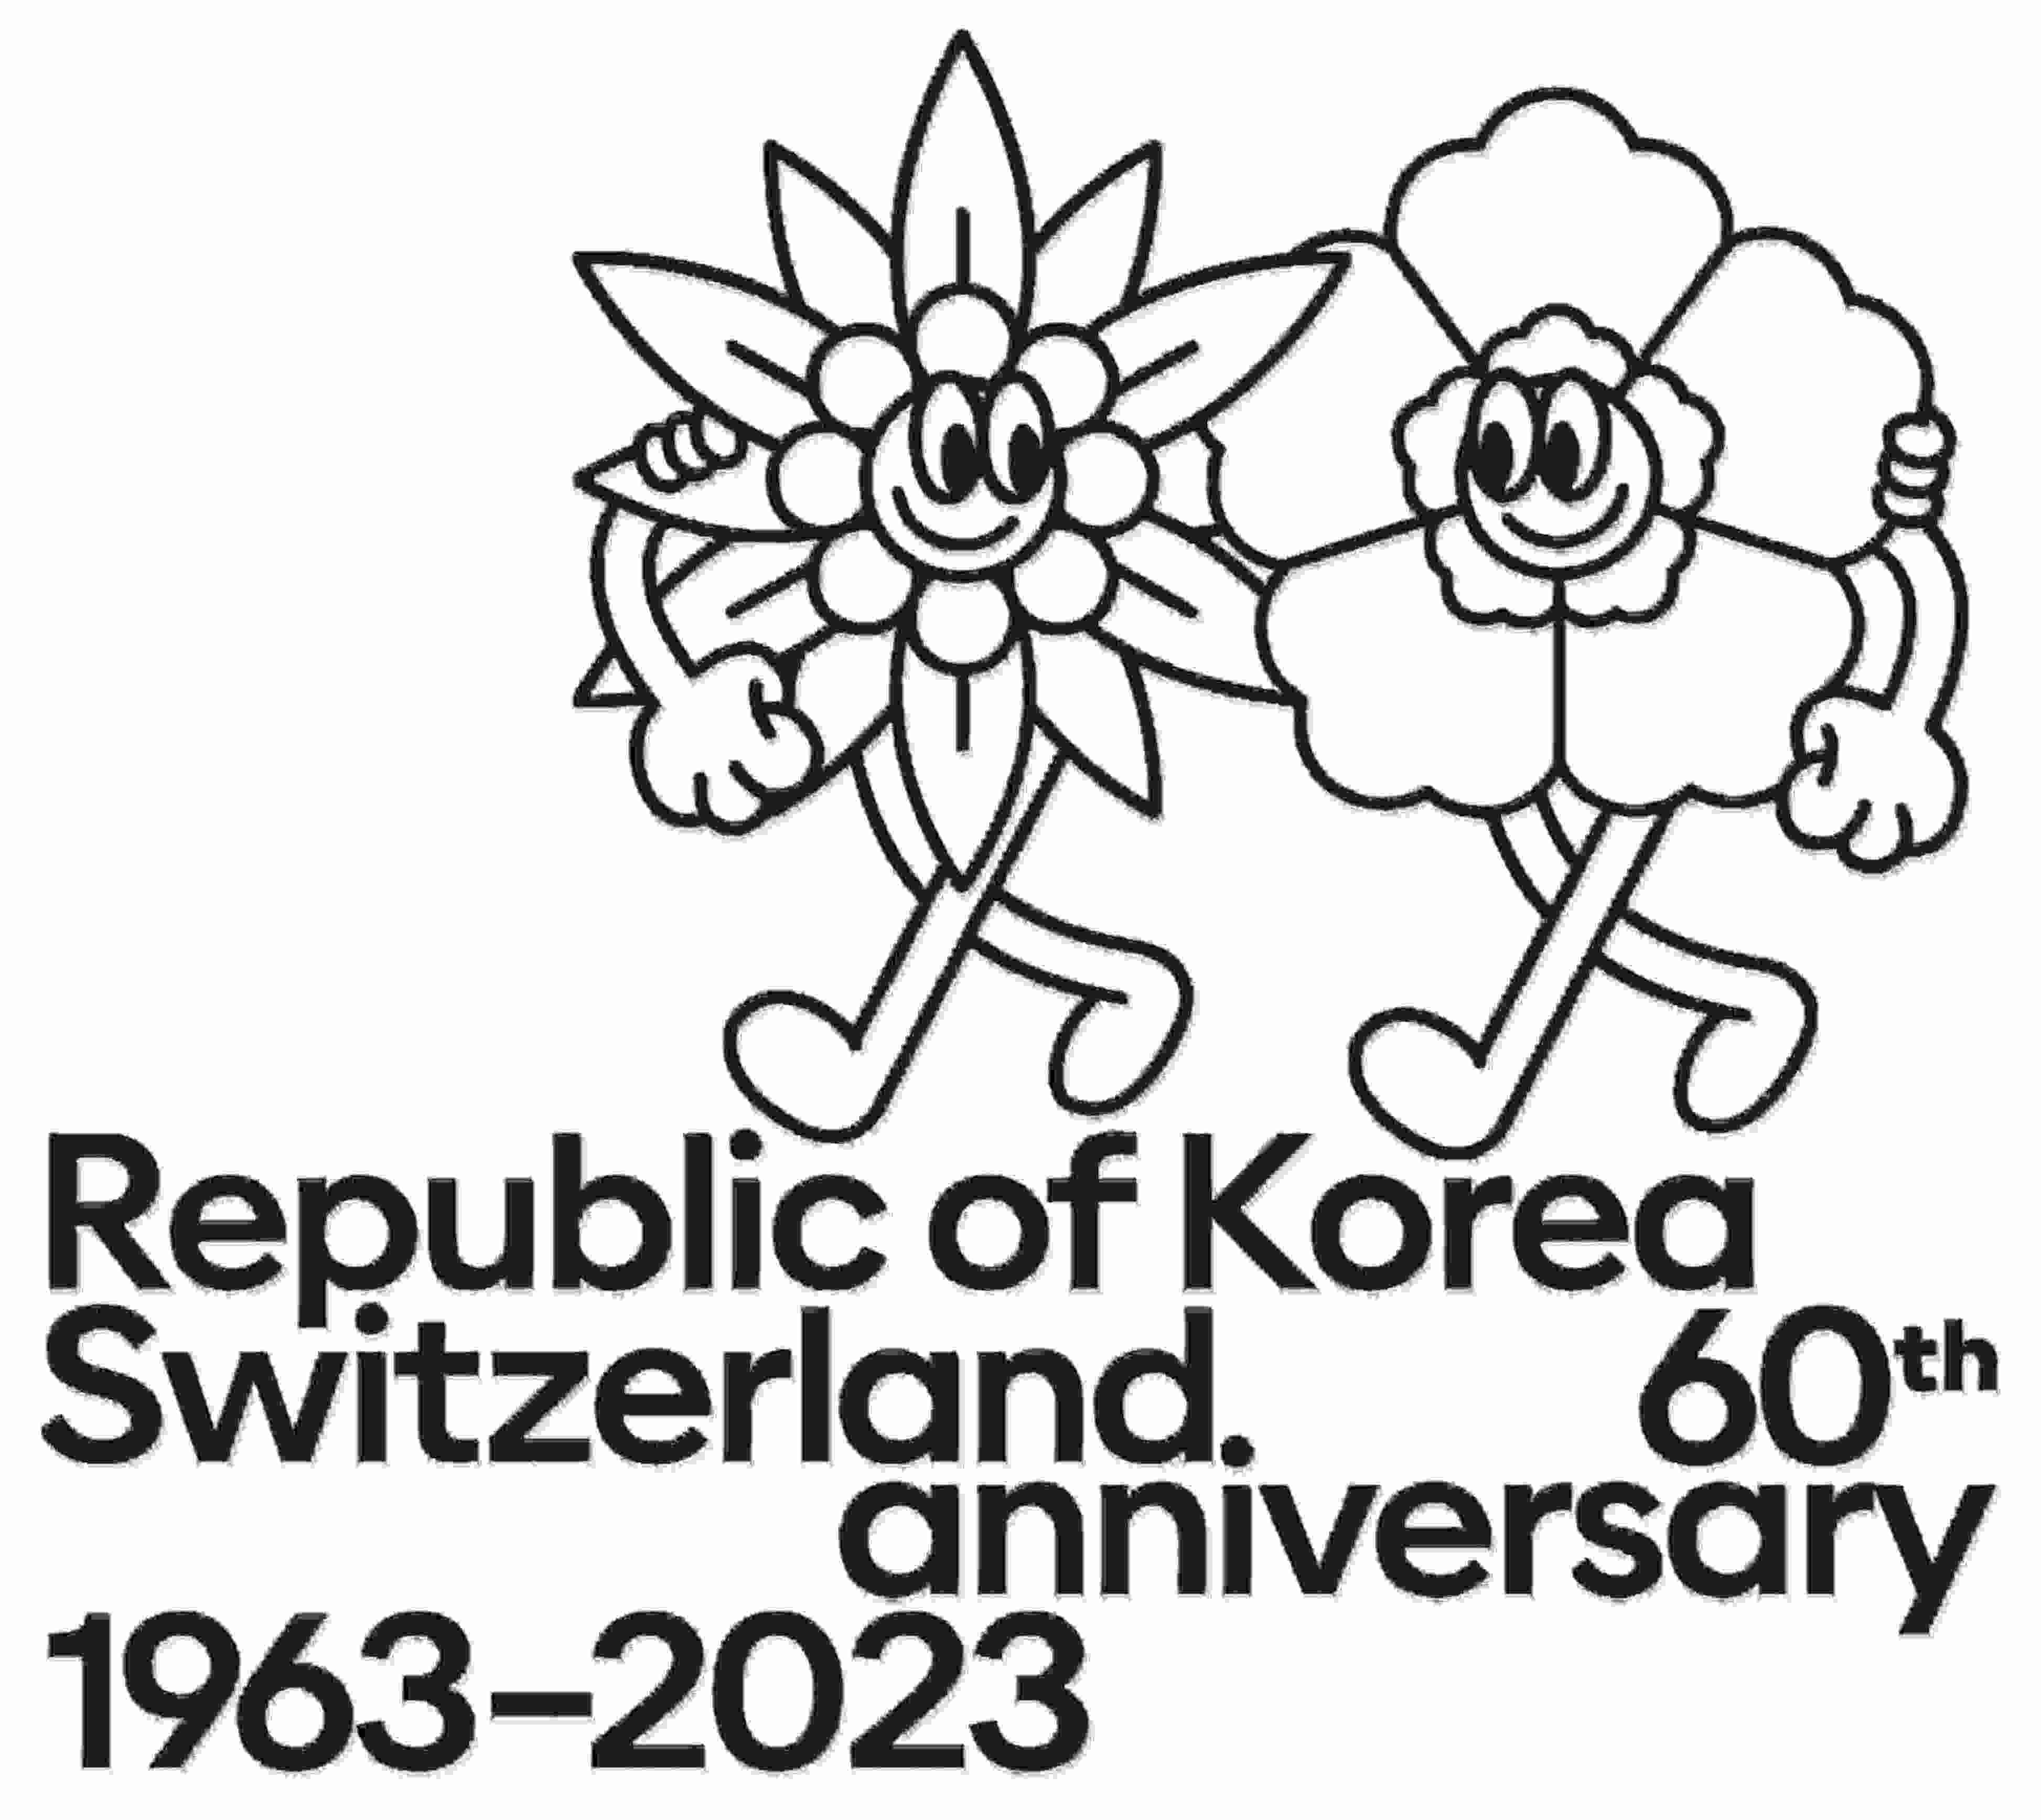 Republic of Korea and Switzerland 60th anniversary 1963-2023